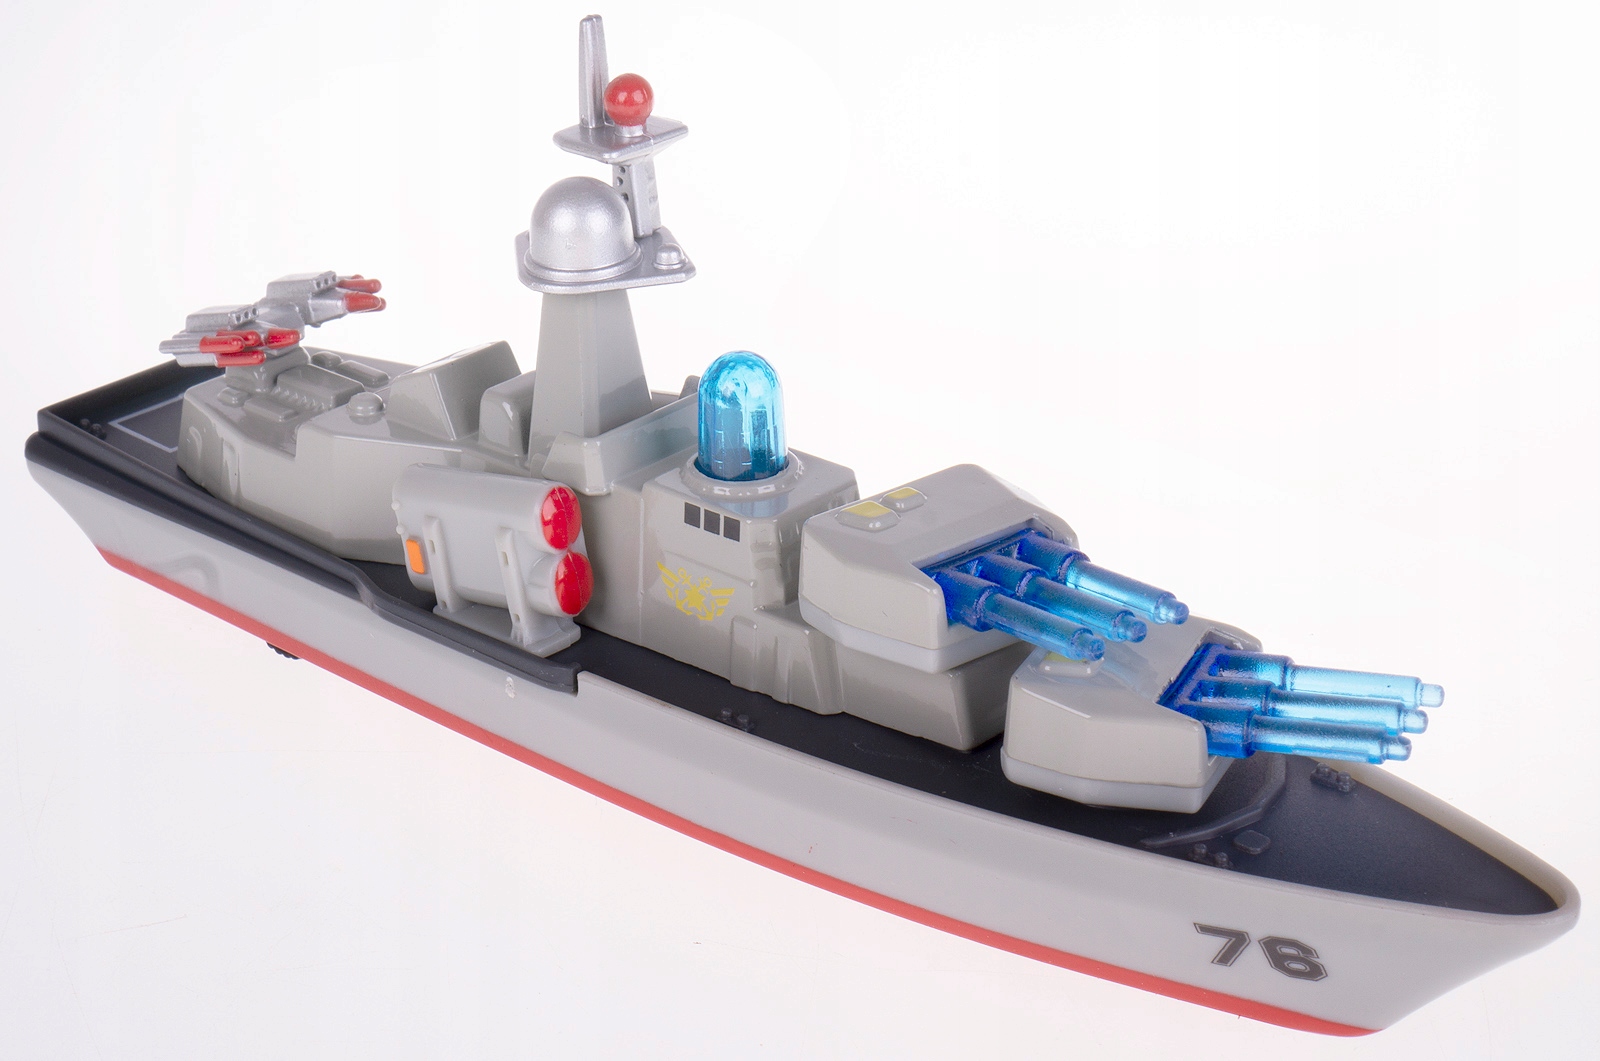 Металлический военно-морской корабль 18.5 см, звук, свет, инерционный, JL641 / 1 шт.